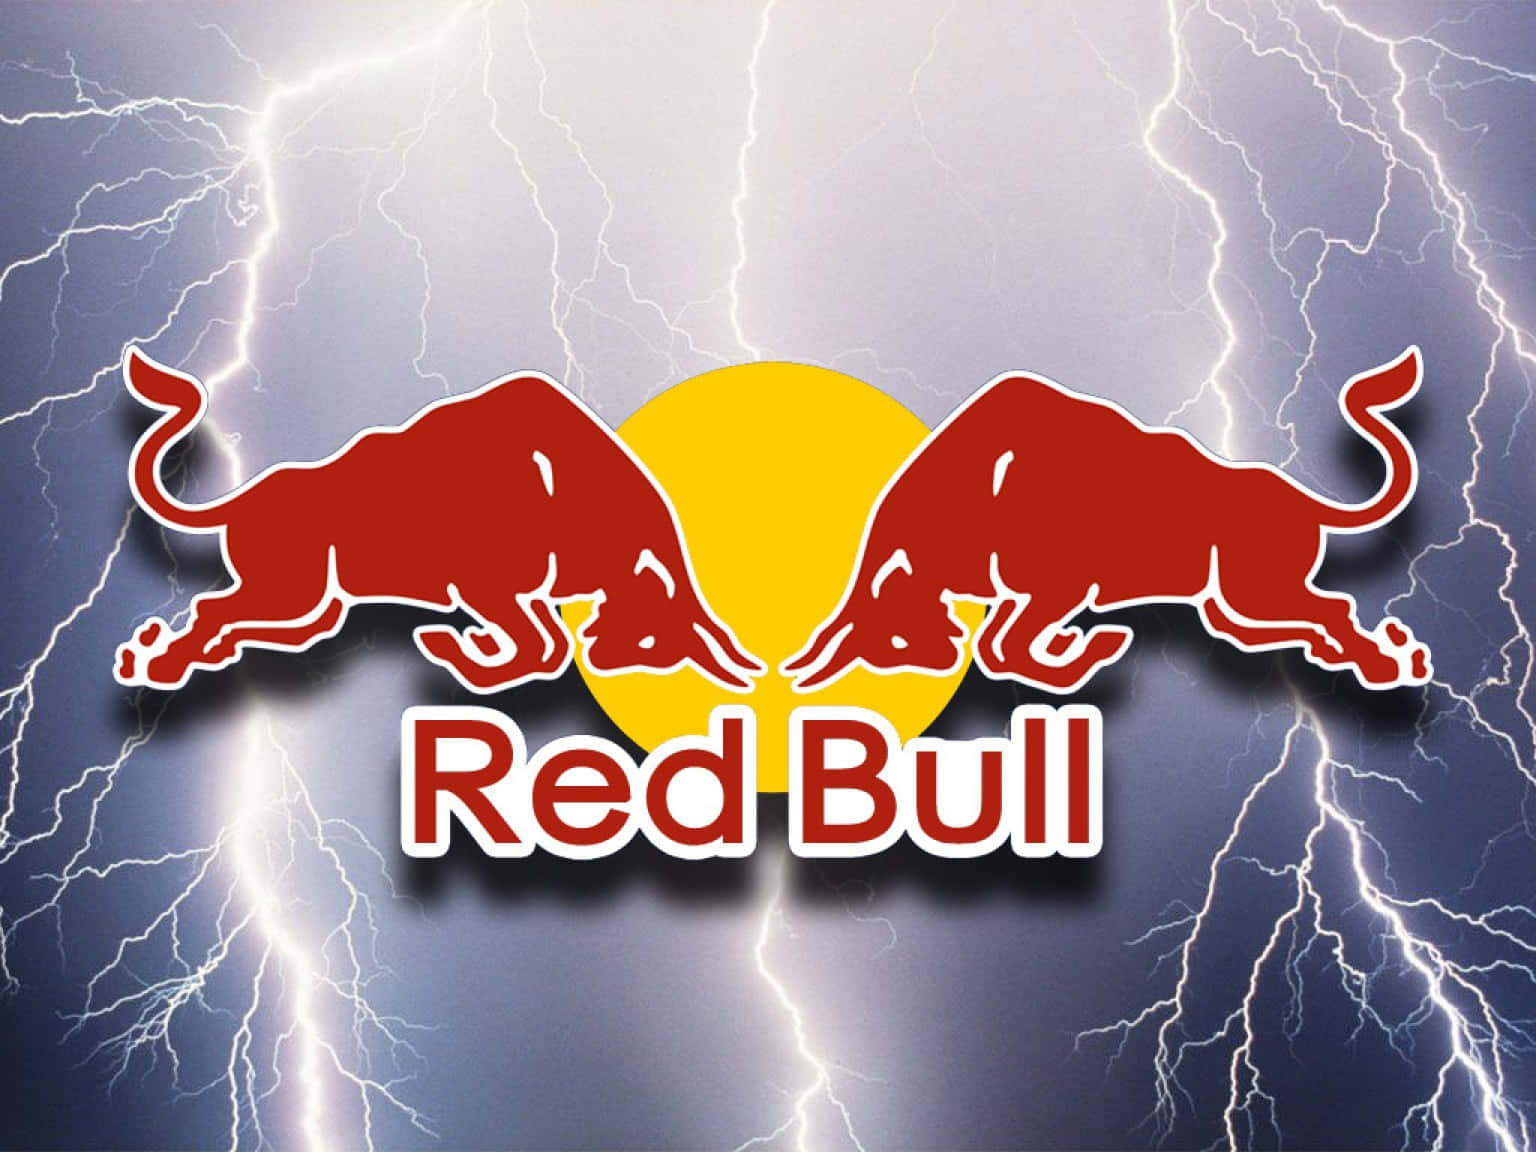 Unaintensa Explosión De Energía - ¡red Bull!